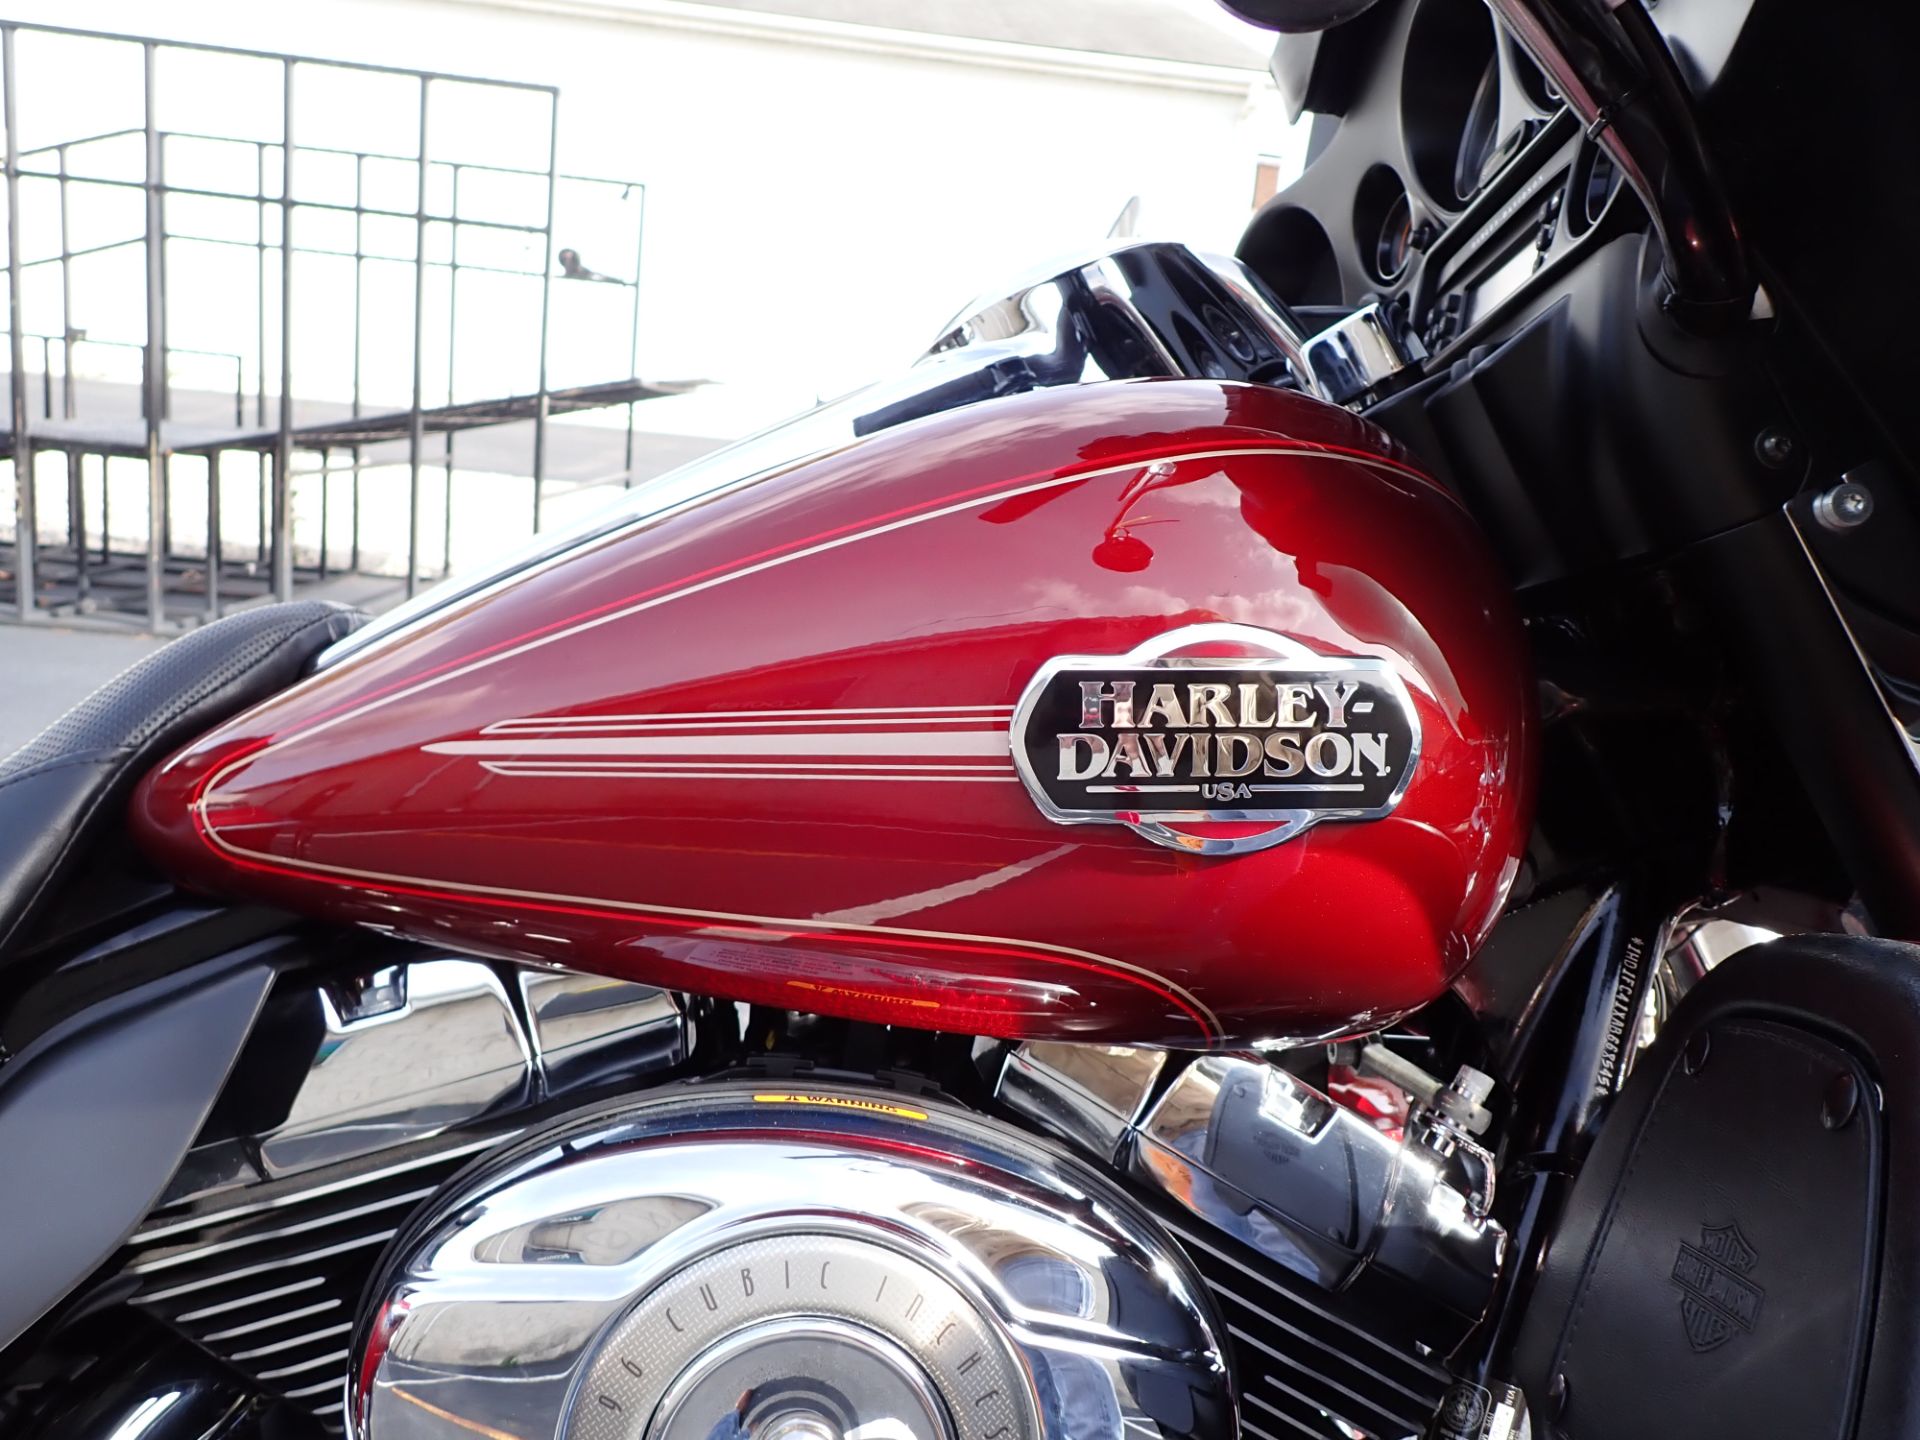 2010 Harley-Davidson Ultra Classic® Electra Glide® in Massillon, Ohio - Photo 3